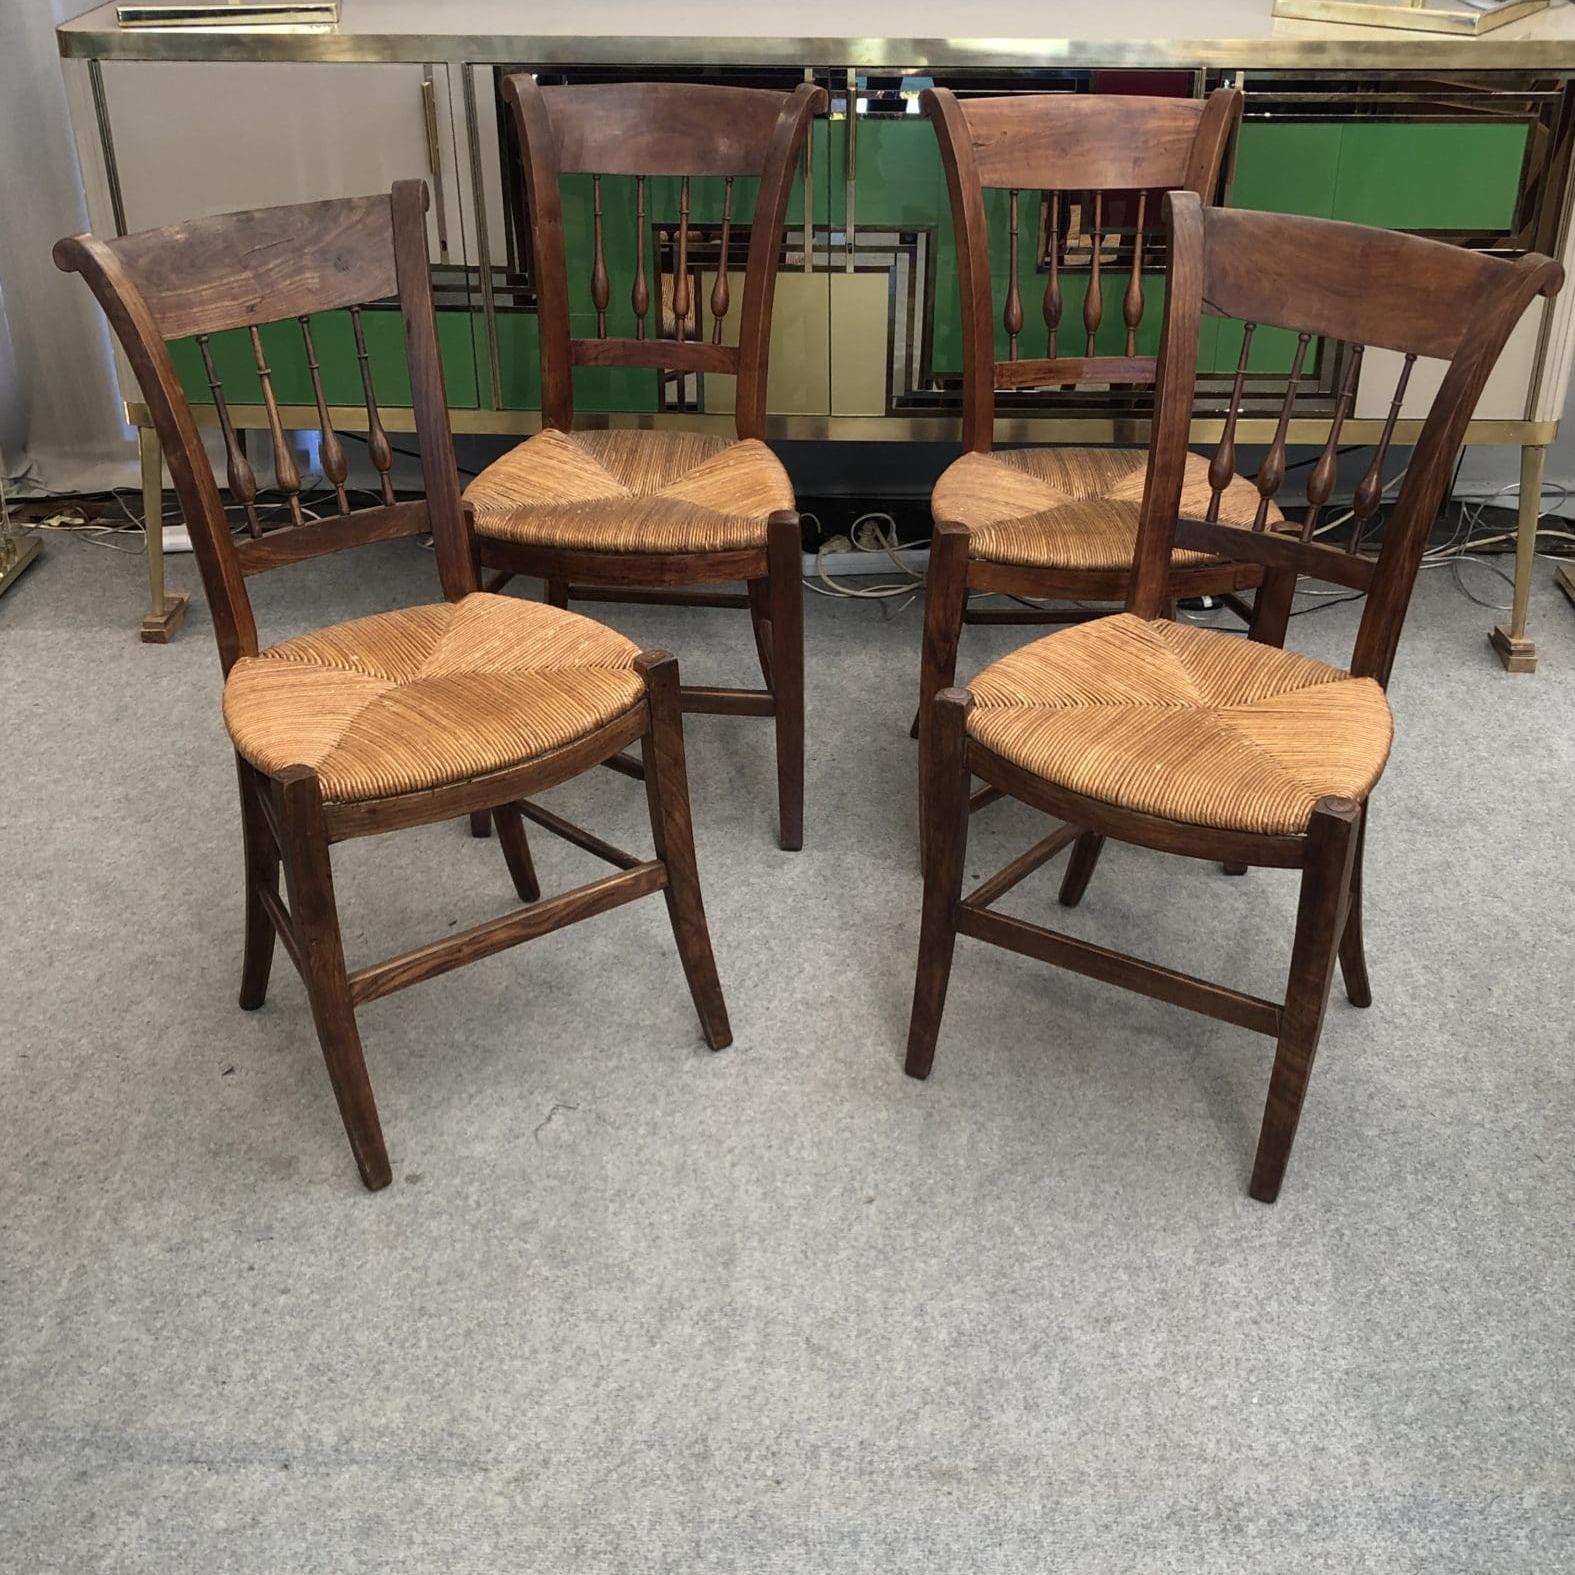 Quatre (4) chaises de style Directoire, fin XIXe / début XXe siècle